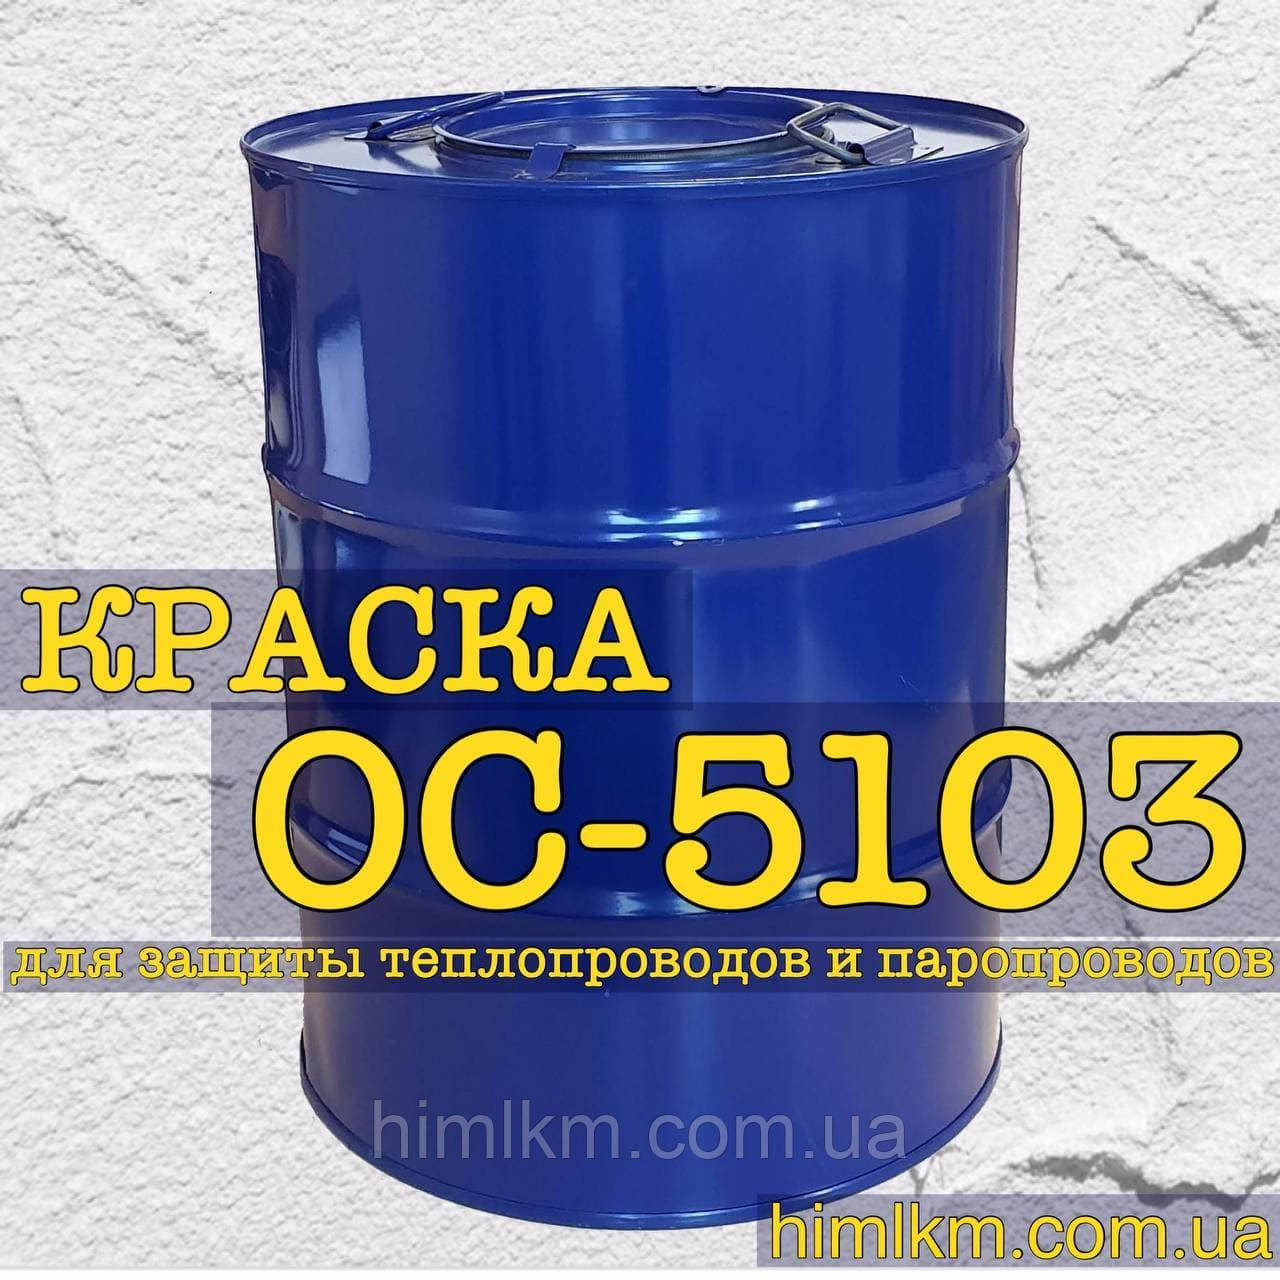 Фарба ОС-5103 антикорозійна для теплопроводів і паропроводів до 180°С, 50кг